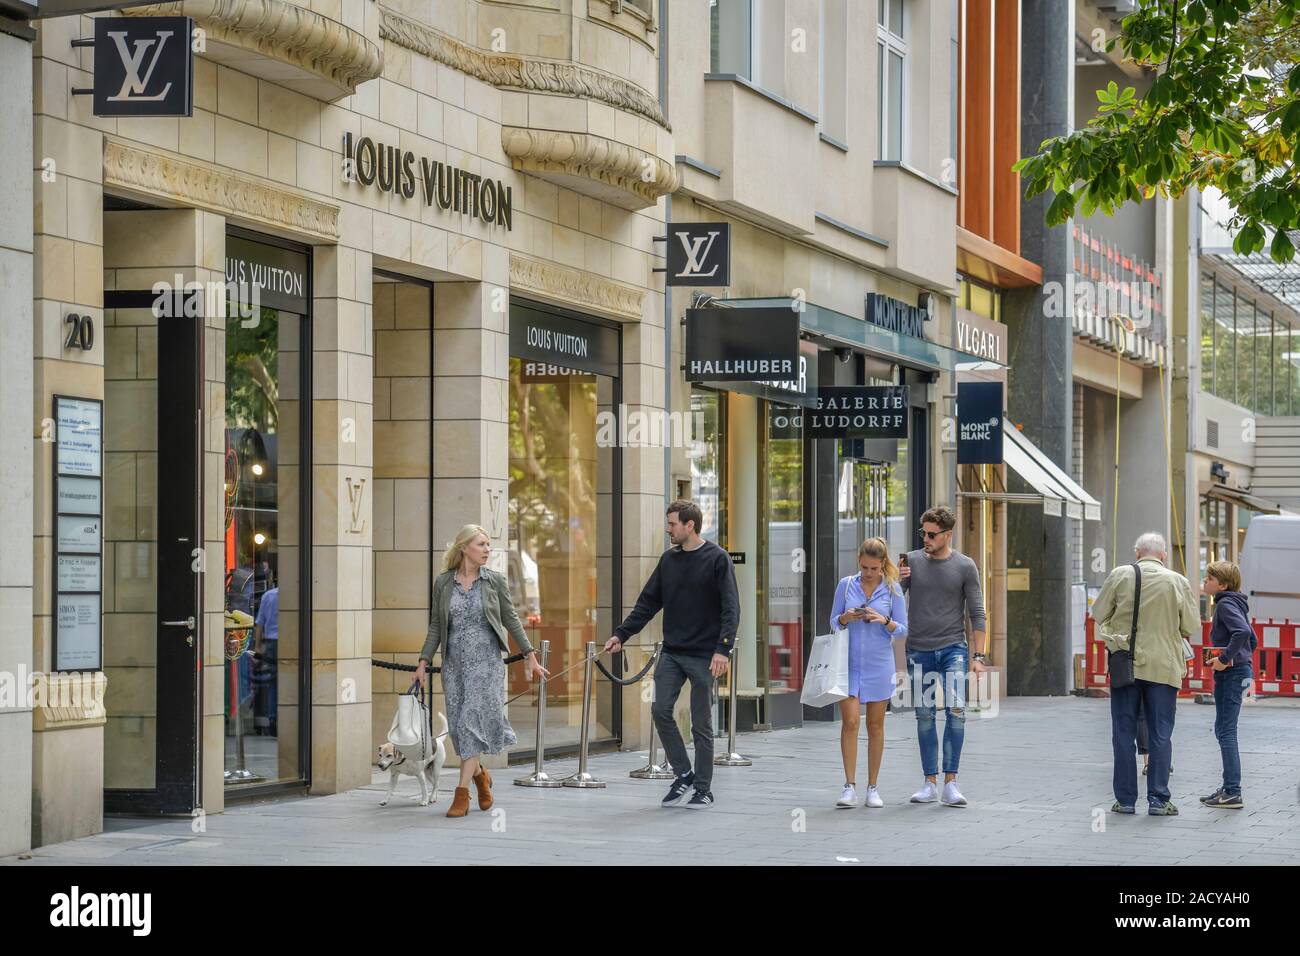 Louis Vuitton, Straßenszene, Königsallee, Düsseldorf, Nordrhein-Westfalen,  Deutschland Stock Photo - Alamy